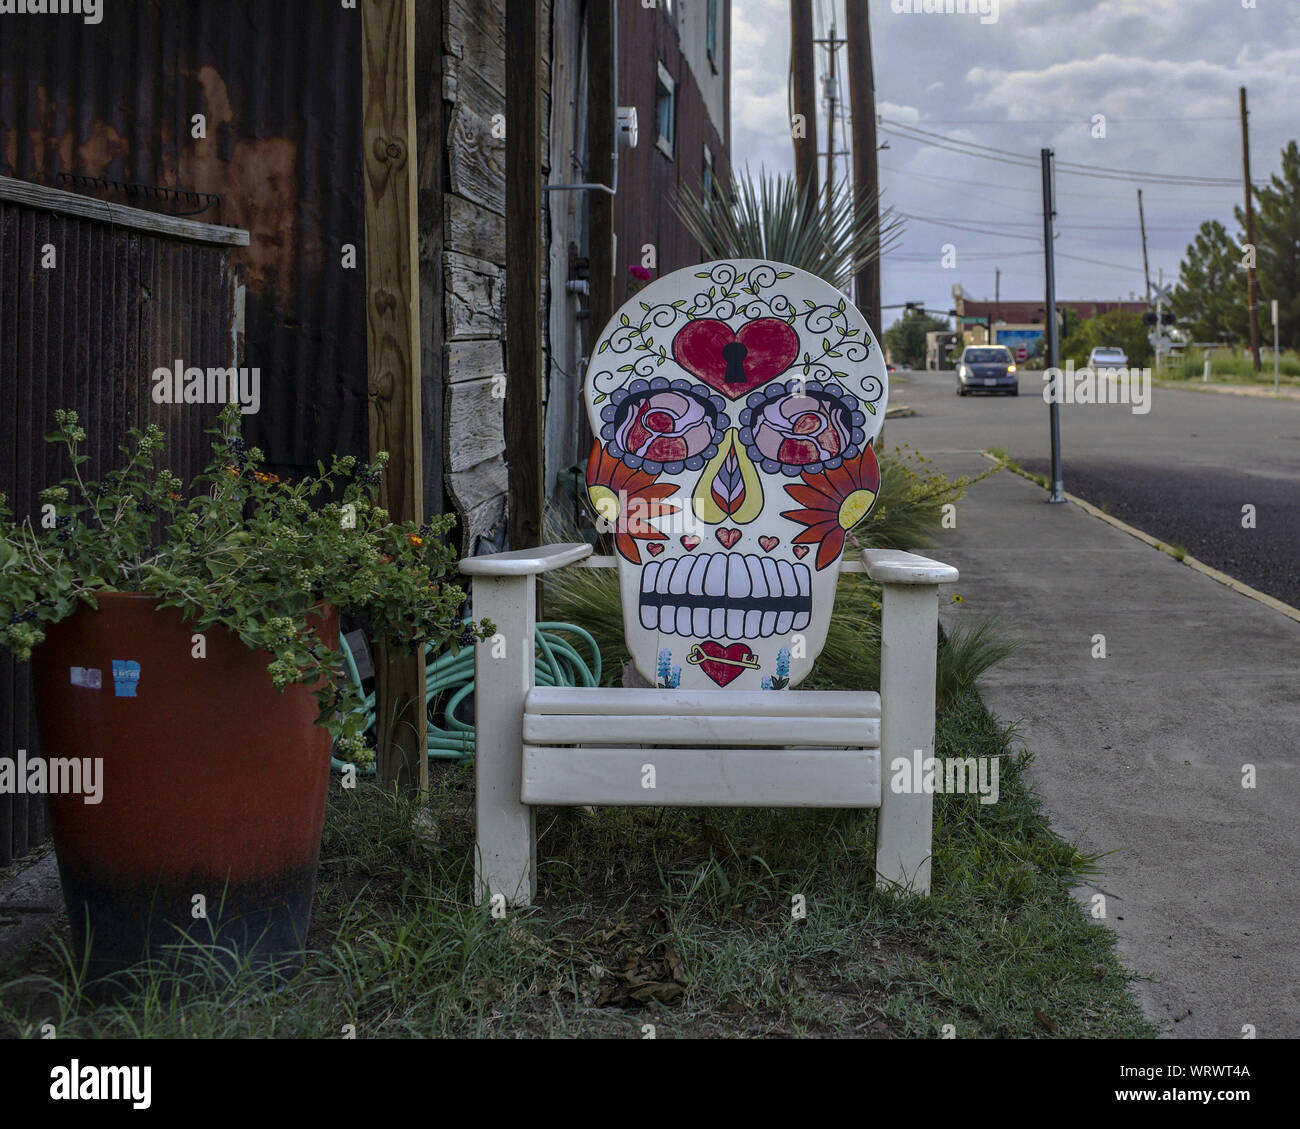 Silla adornada con una calavera, un mexicano tradicional representación de un cráneo, en una calle de Alpine, Texas. Foto de stock